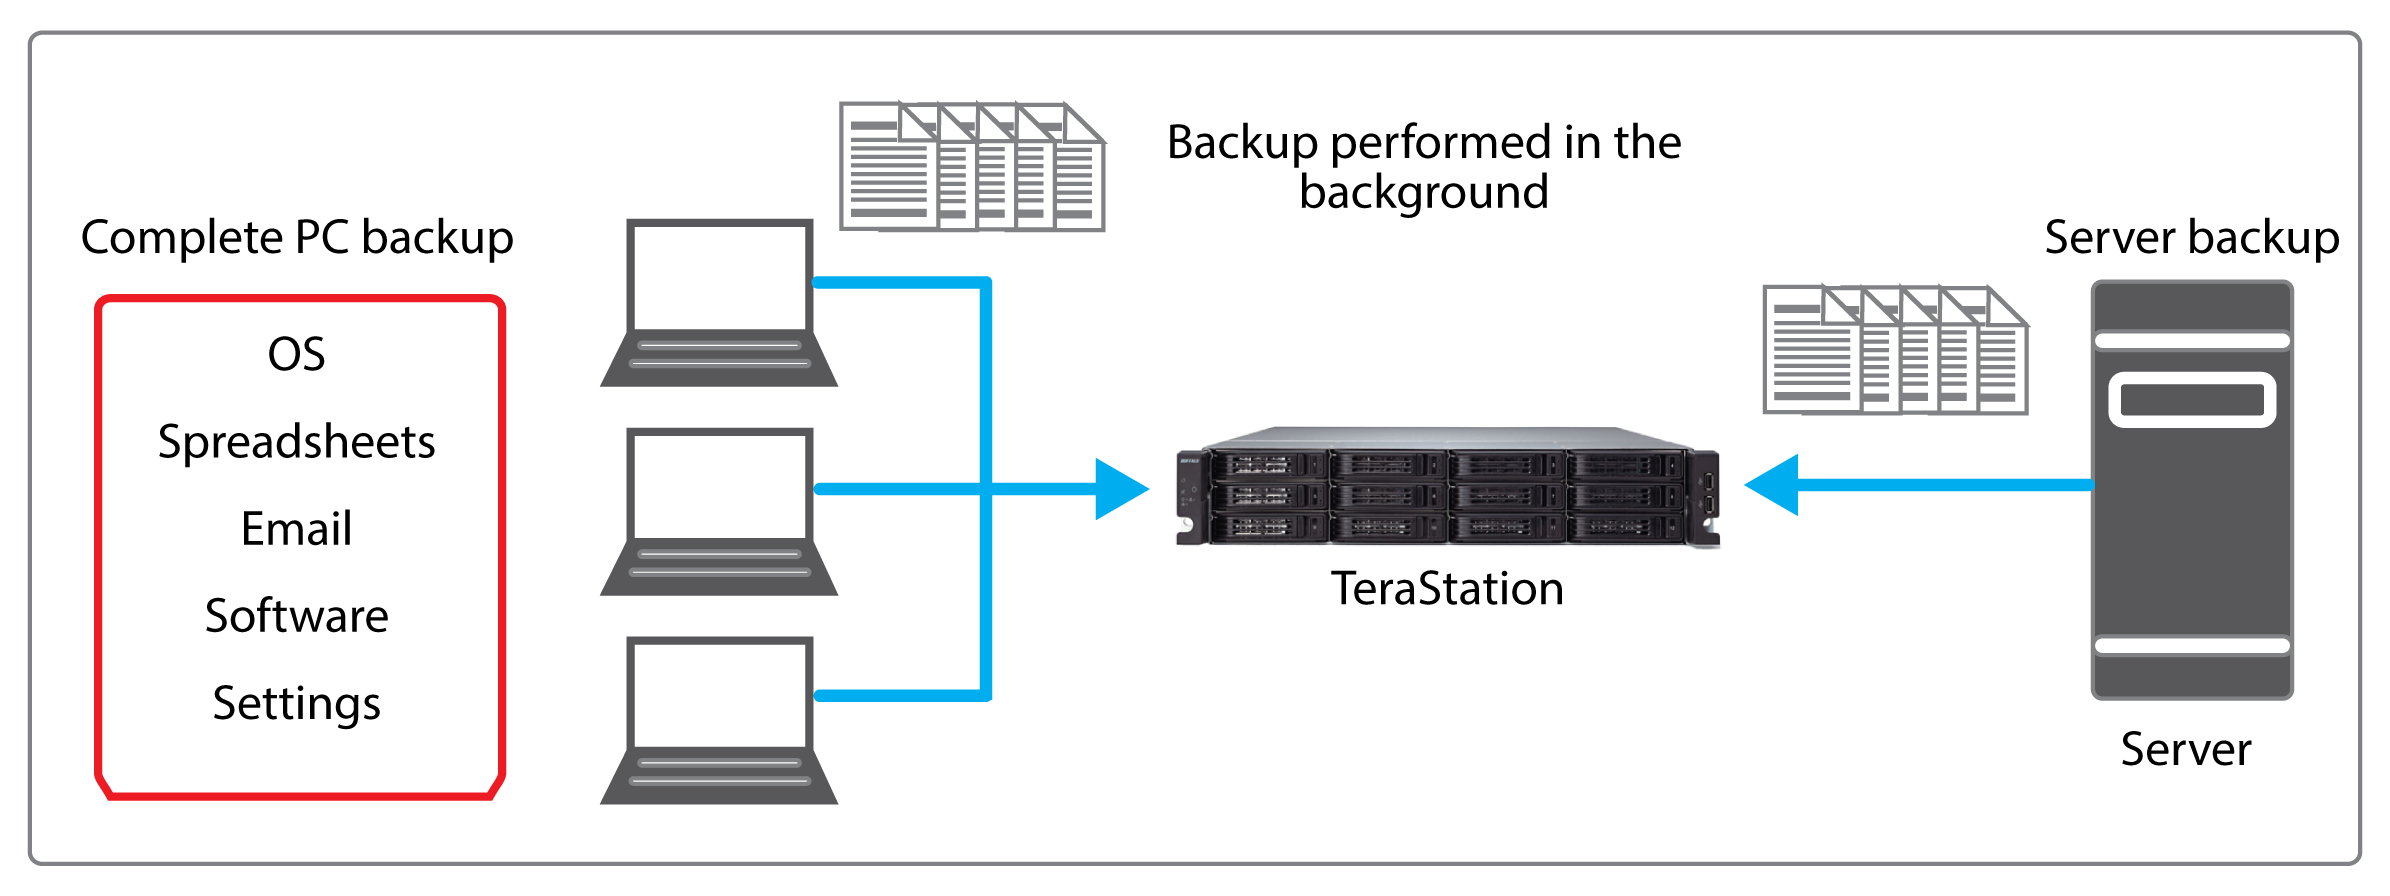 terastation 7000r client server backup